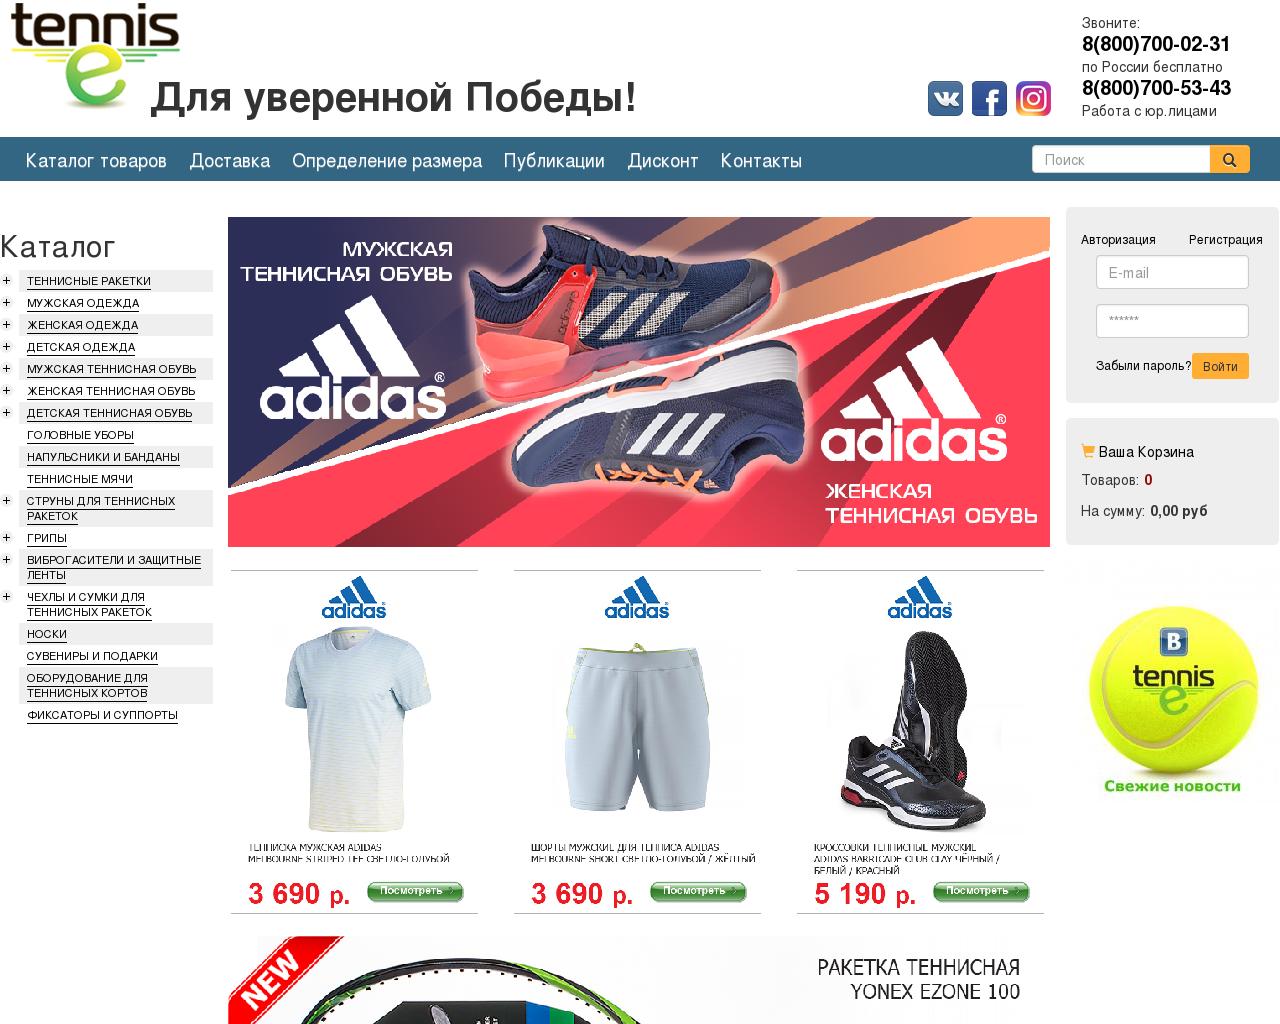 Изображение сайта tennis-e.ru в разрешении 1280x1024